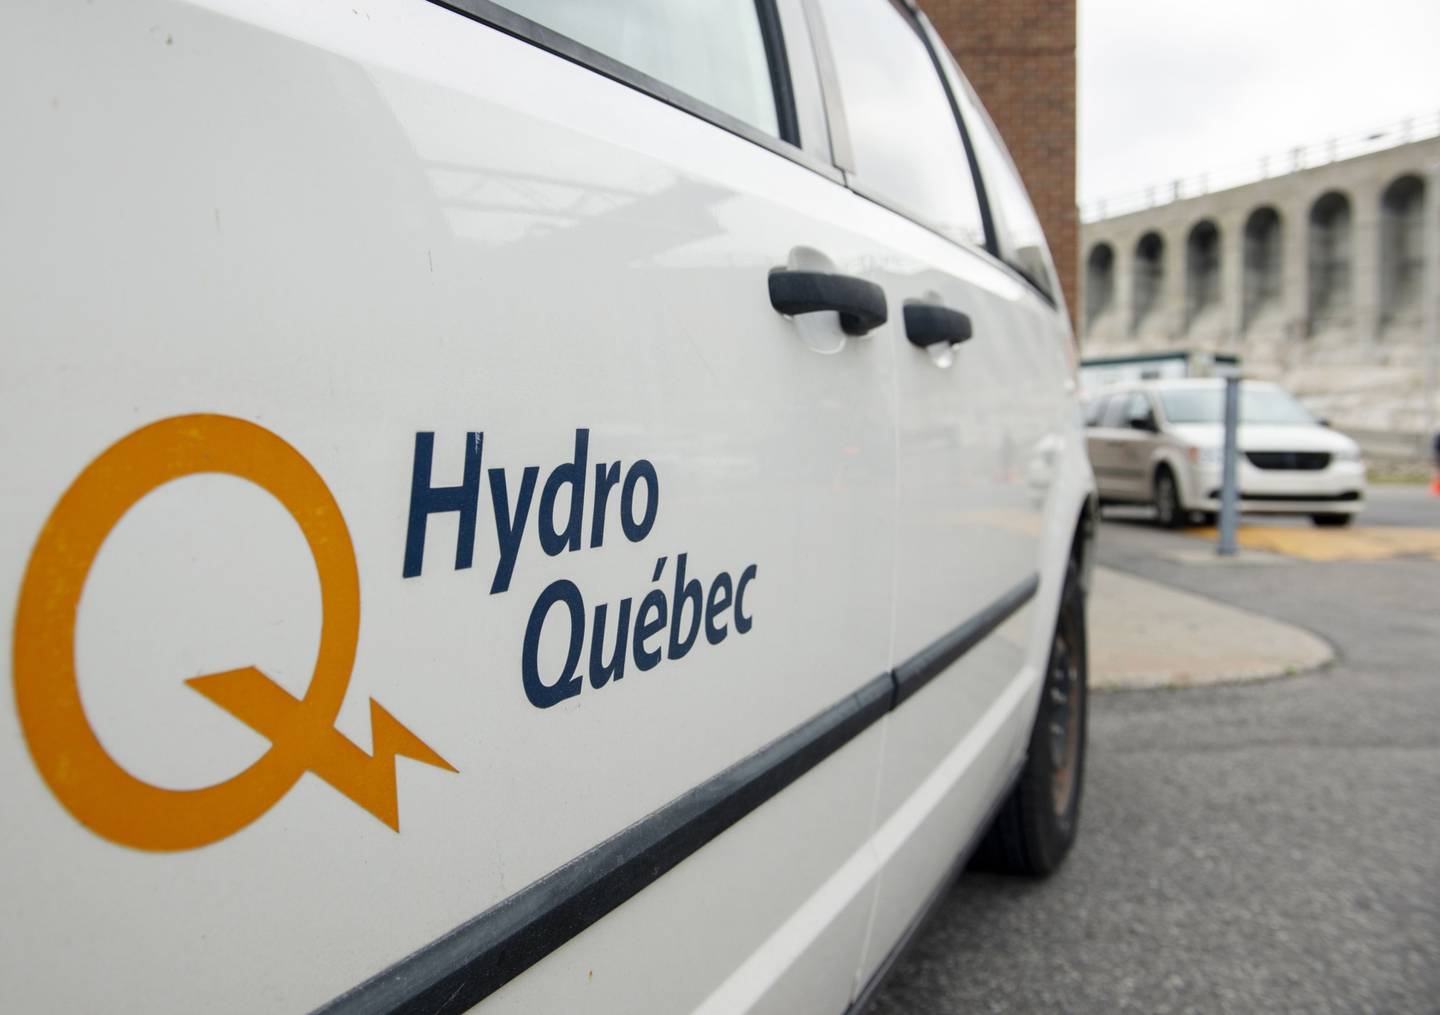 Un logotipo de Hydro-Quebec en un camión en la estación de generación hidroeléctrica de Beauharnois en el río San Lorenzo en Beauharnois, Quebec, Canadá, el jueves 14 de octubre de 2021. Hydro-Quebec ha propuesto la construcción de una línea de transmisión de 1,25 gigavatios desde el sur de Quebec hasta Astoria (Queens), conocida como Champlain Hudson Power Express, informa el Financial Post. Fotógrafo: Graham Hughes/Bloomberg